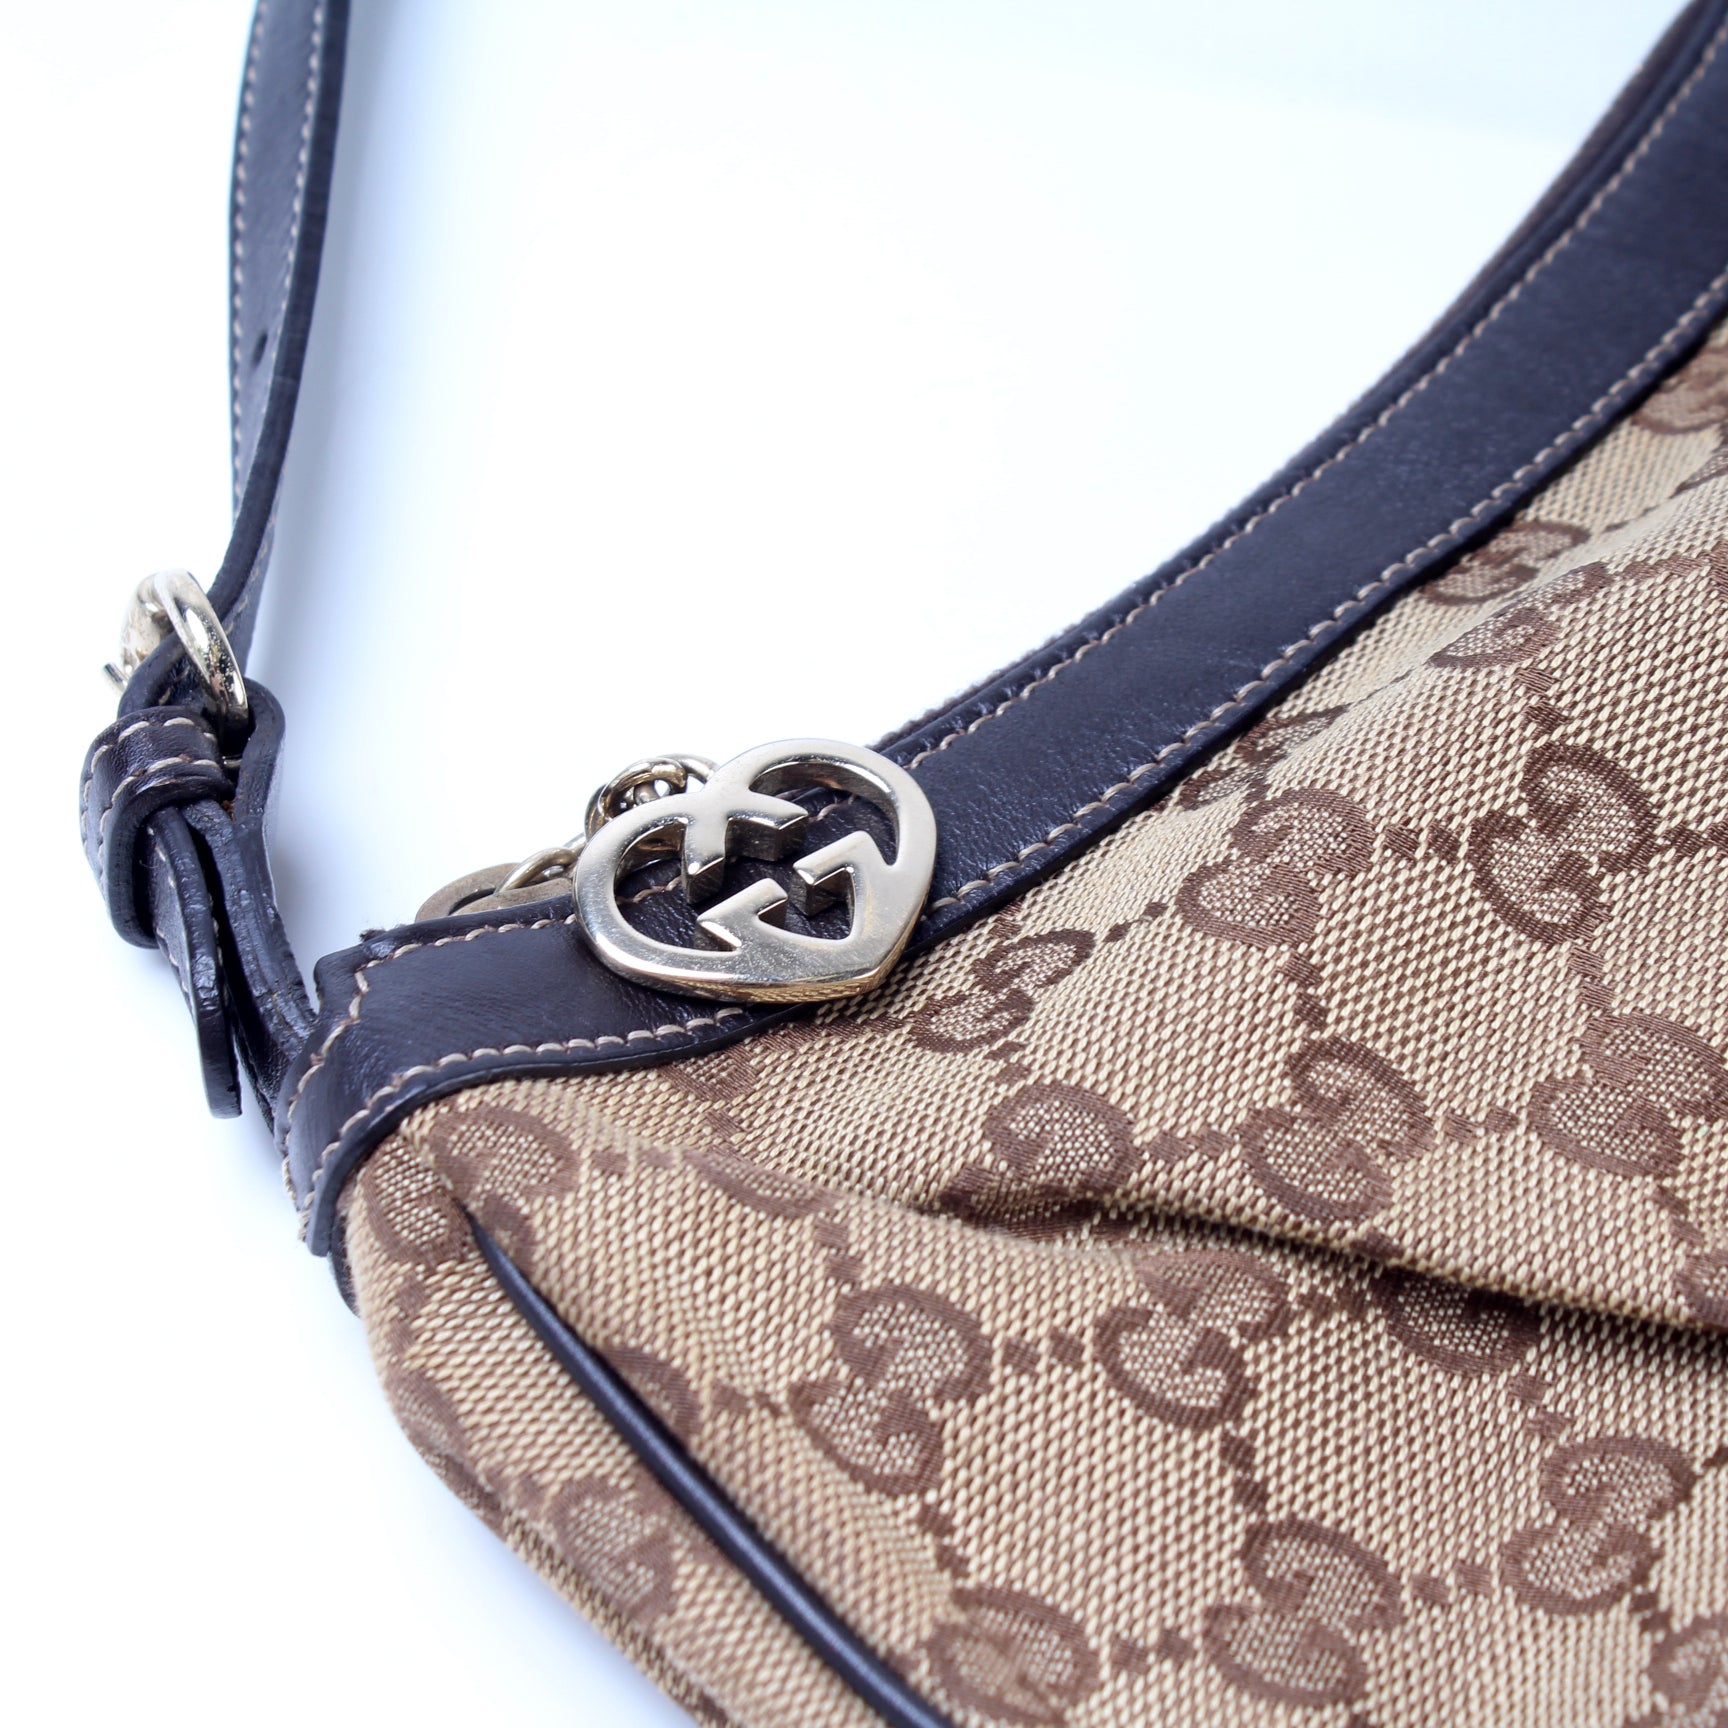 245938 Lovely Heart Charm Pochette – Keeks Designer Handbags